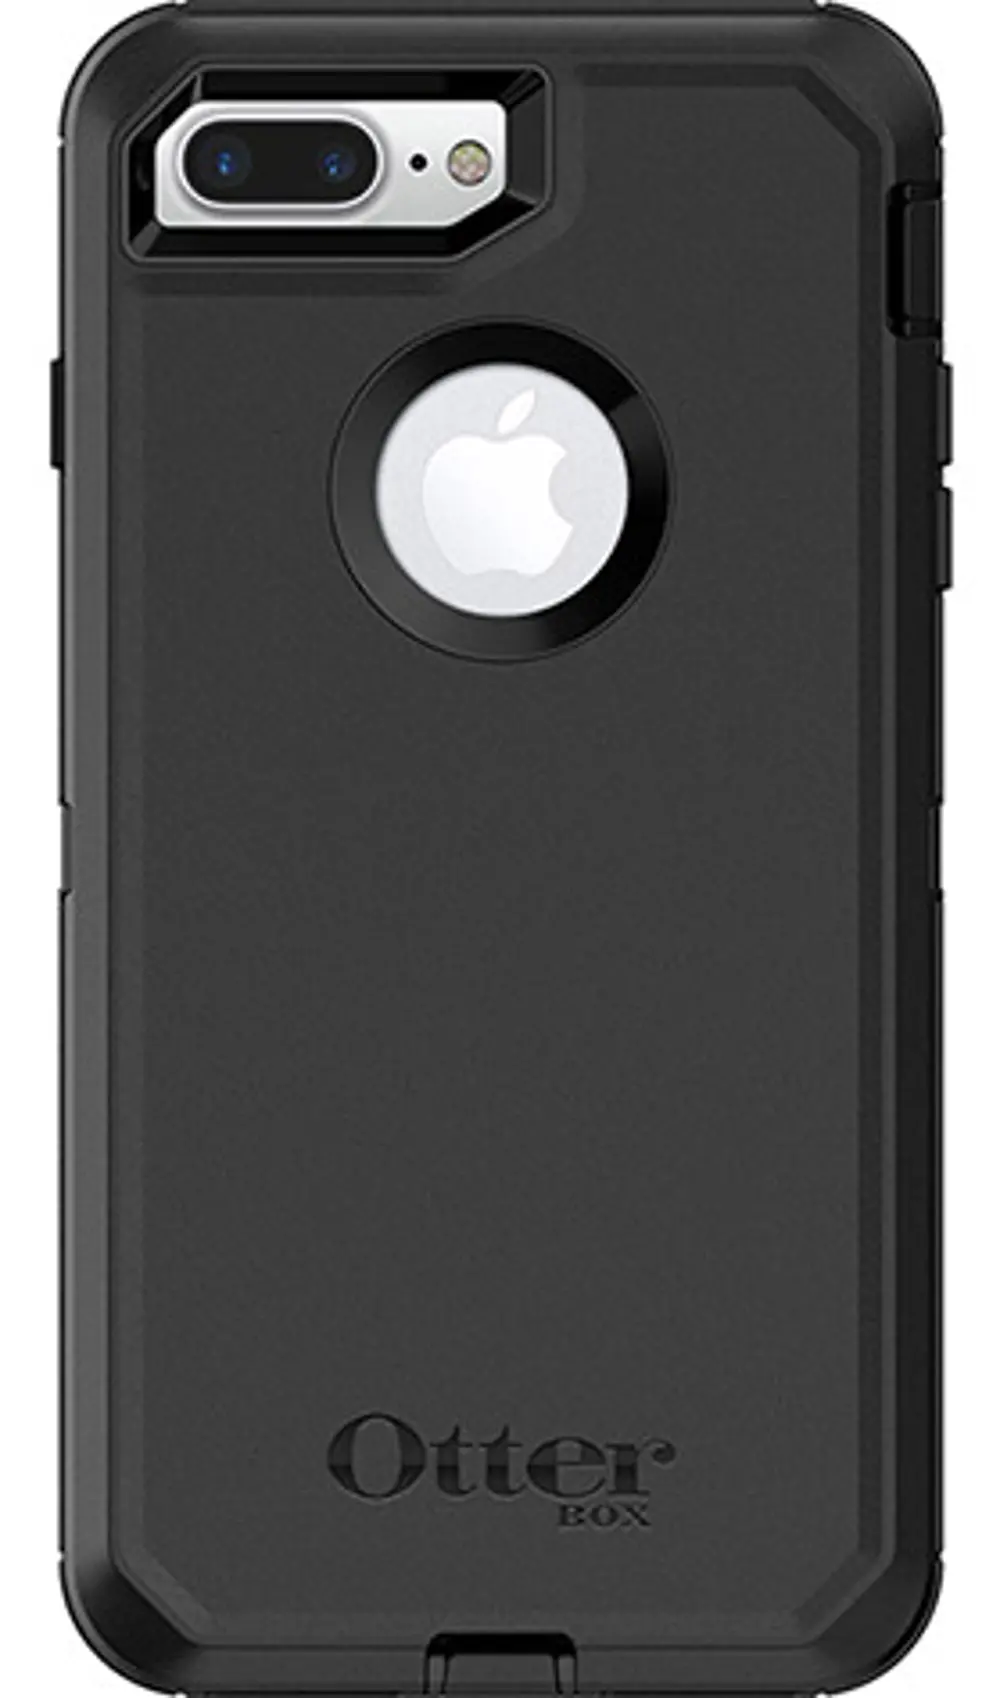 77-53907 OtterBox Defender Black iPhone 7 Plus Case-1